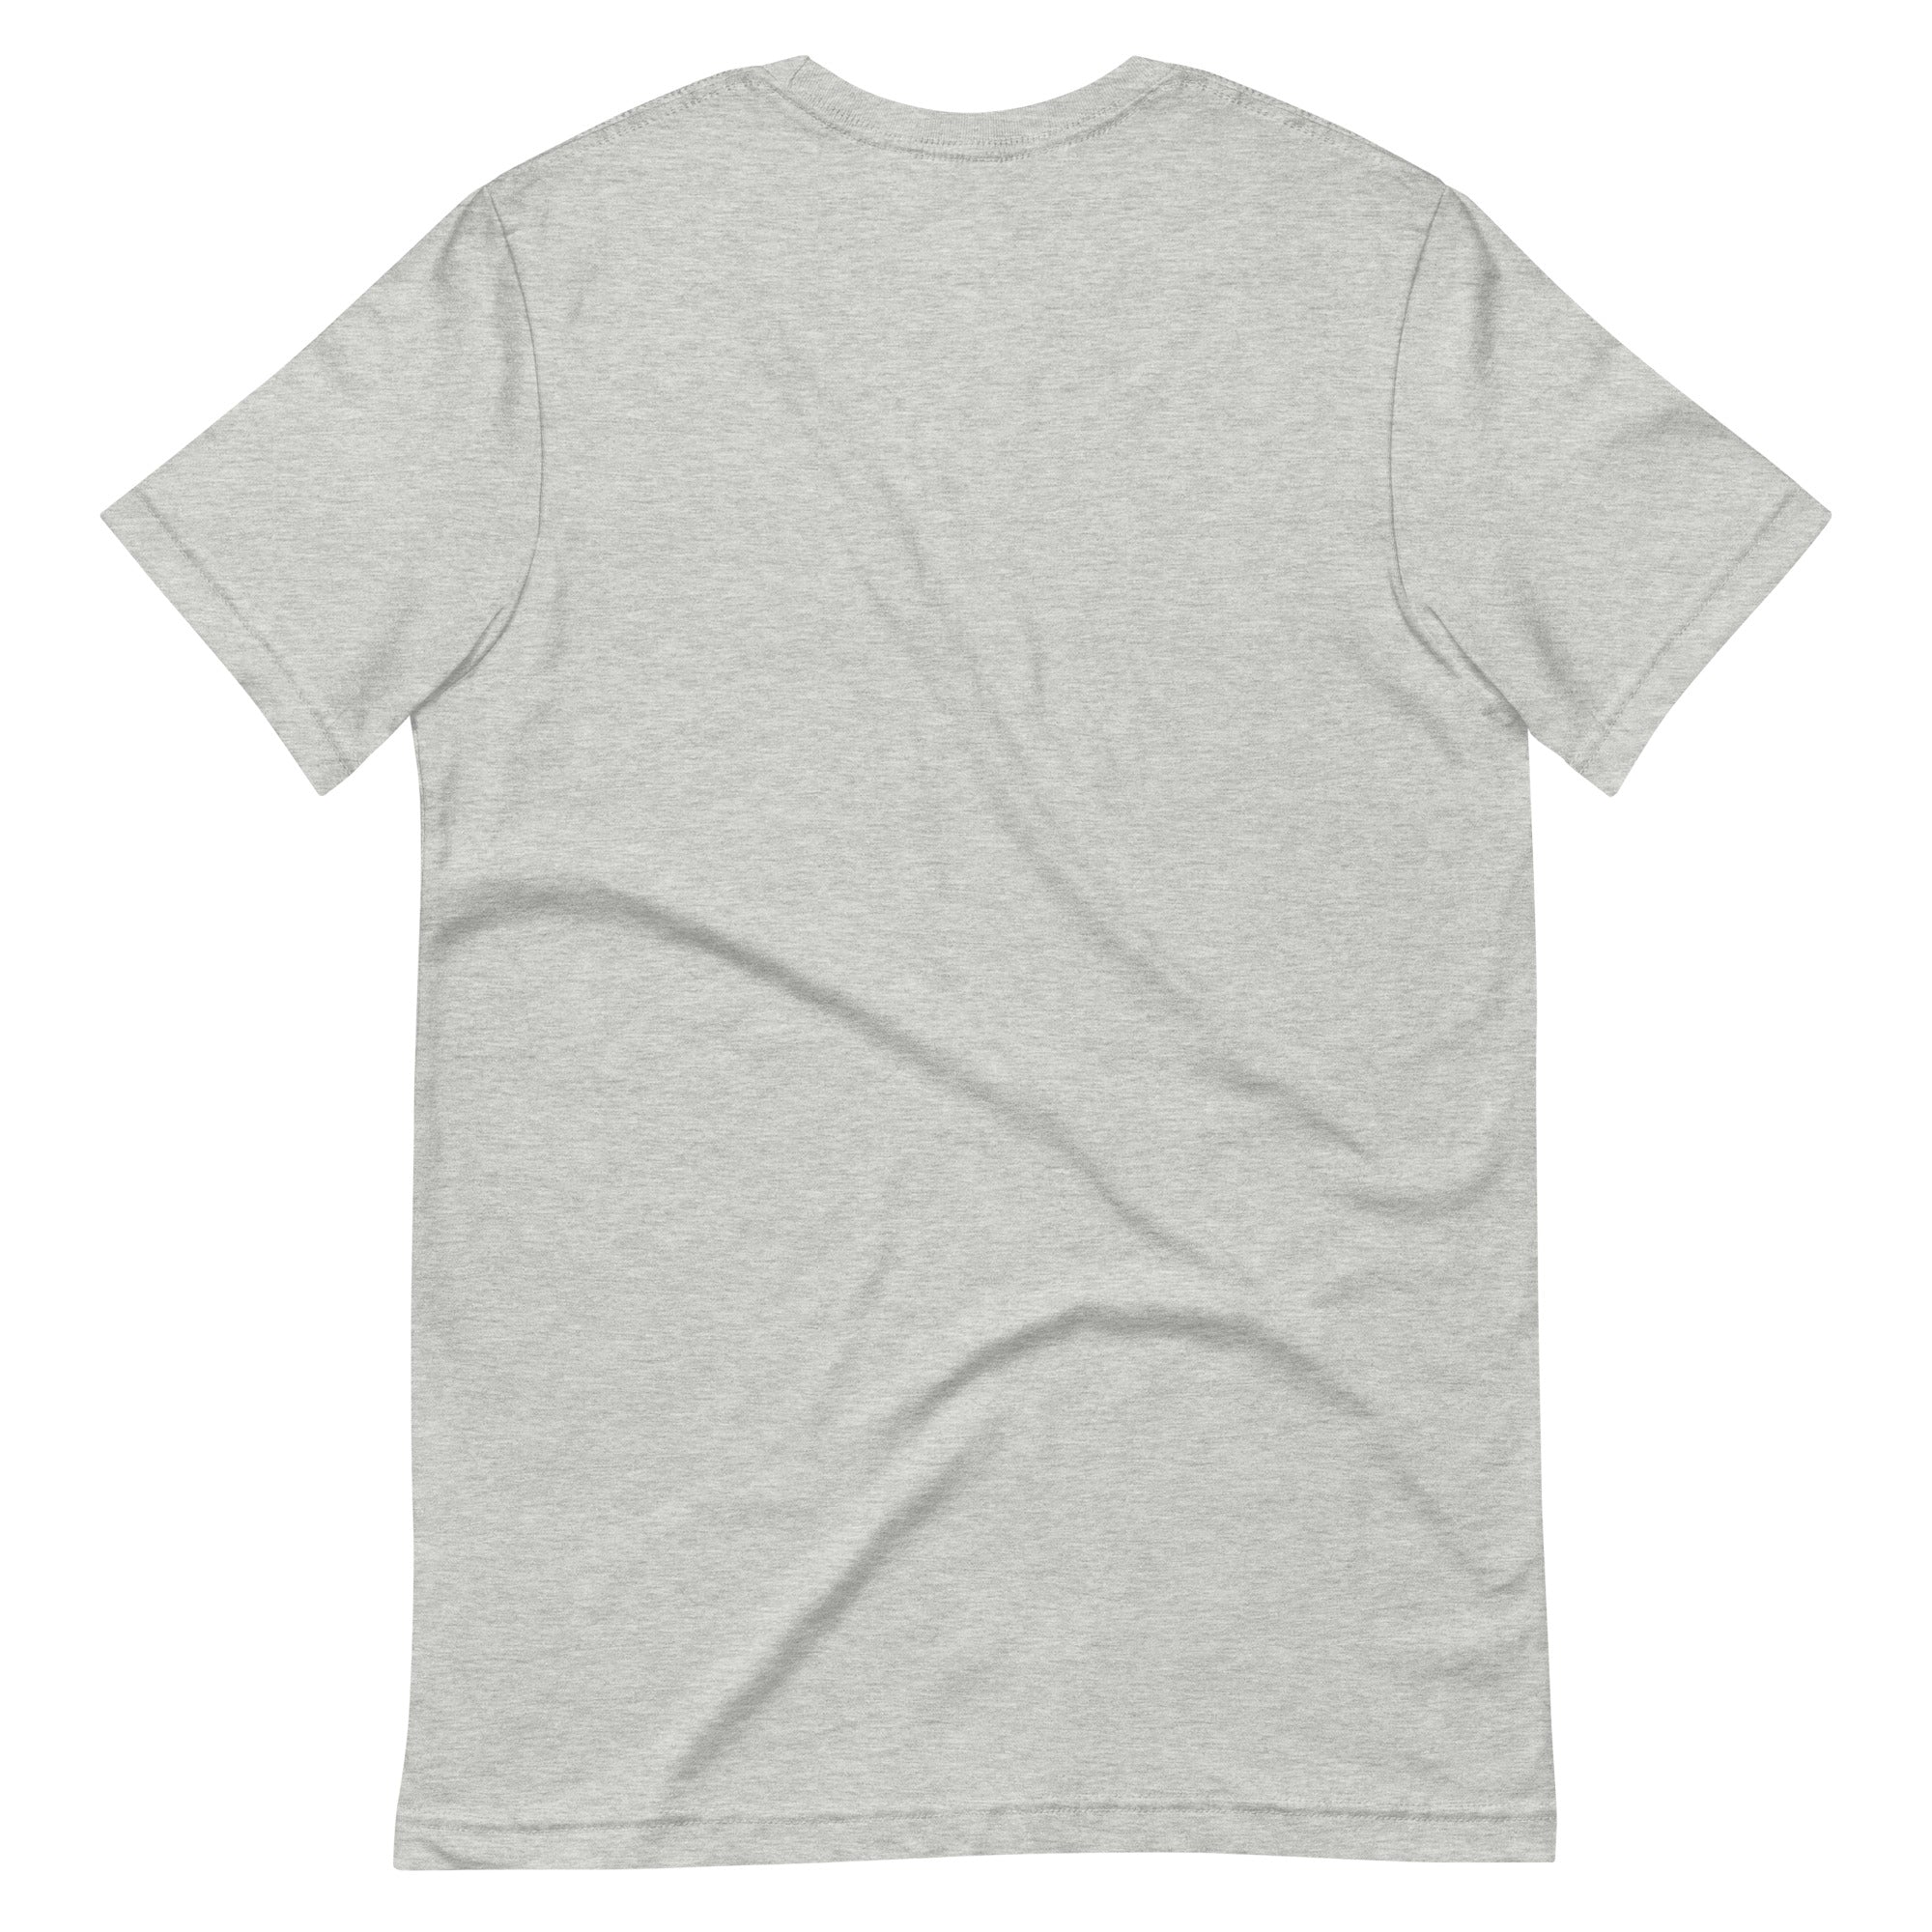 Arches T-Shirt (Grey) - SoMa | San Francisco, CA